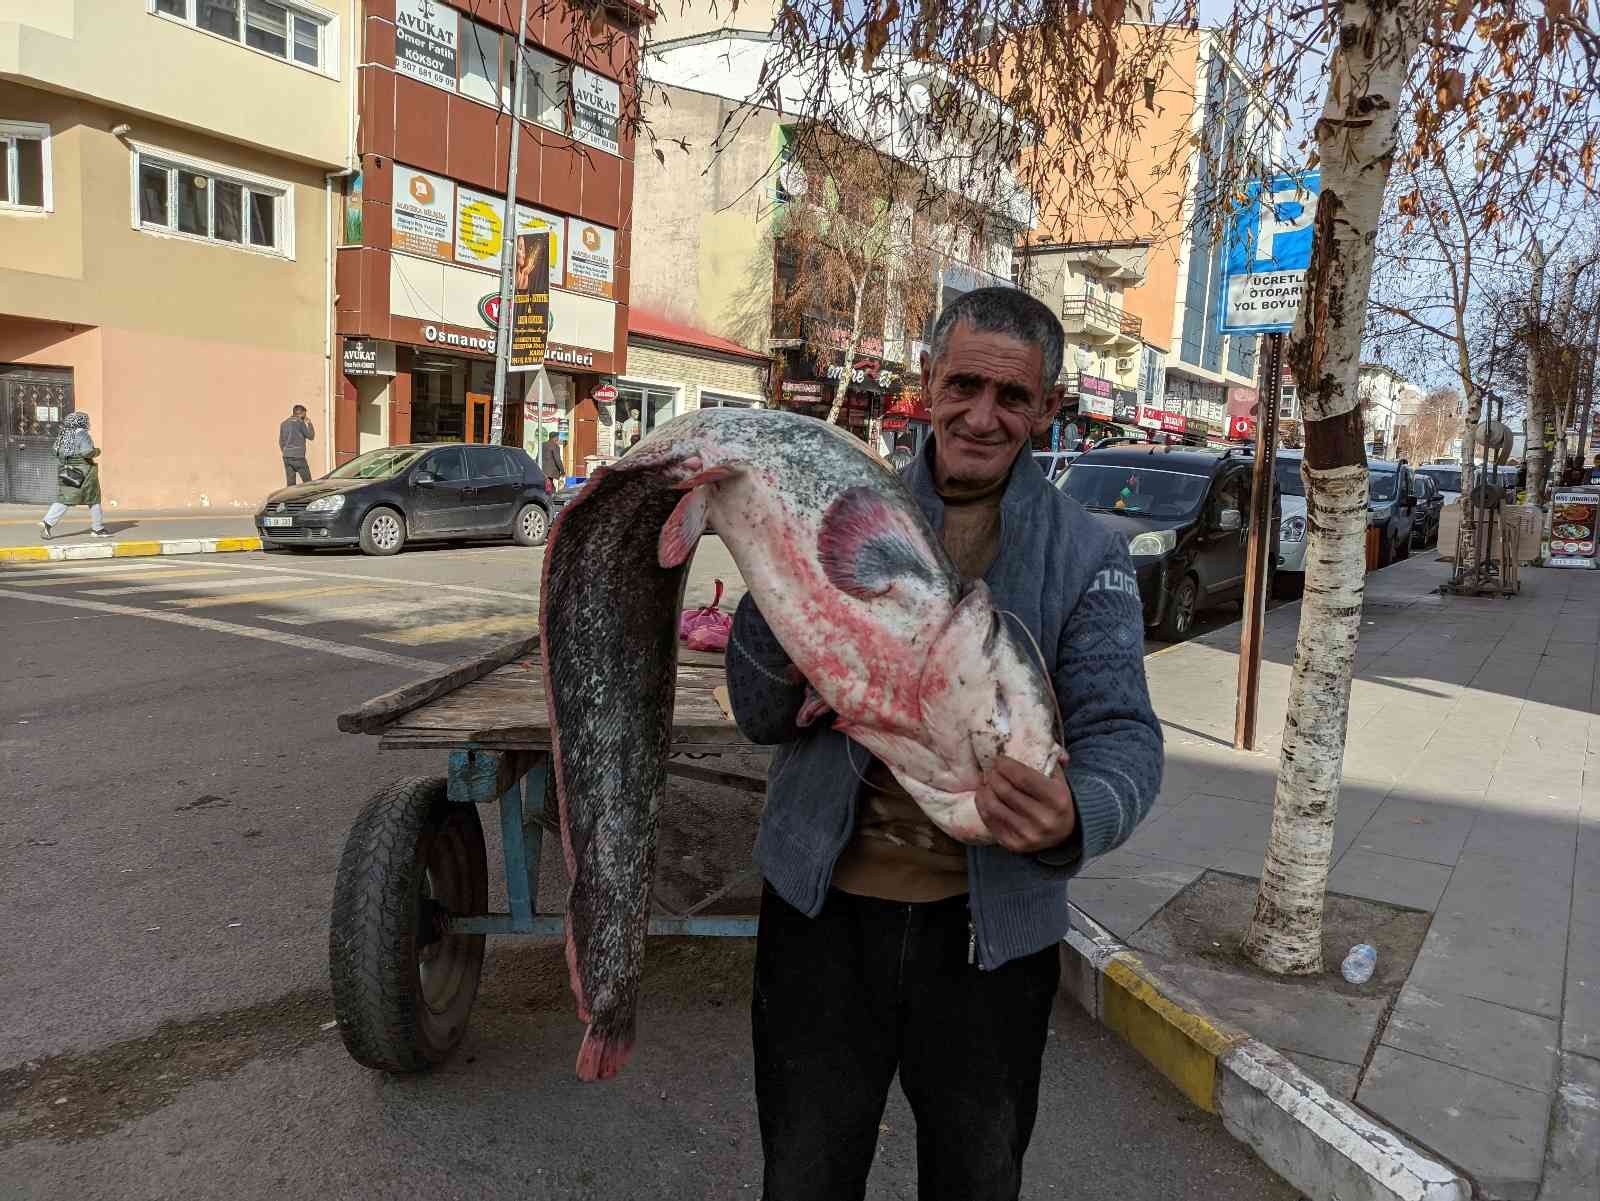 Kura nehrinde boyu kadar yayın balığı tuttu #ardahan